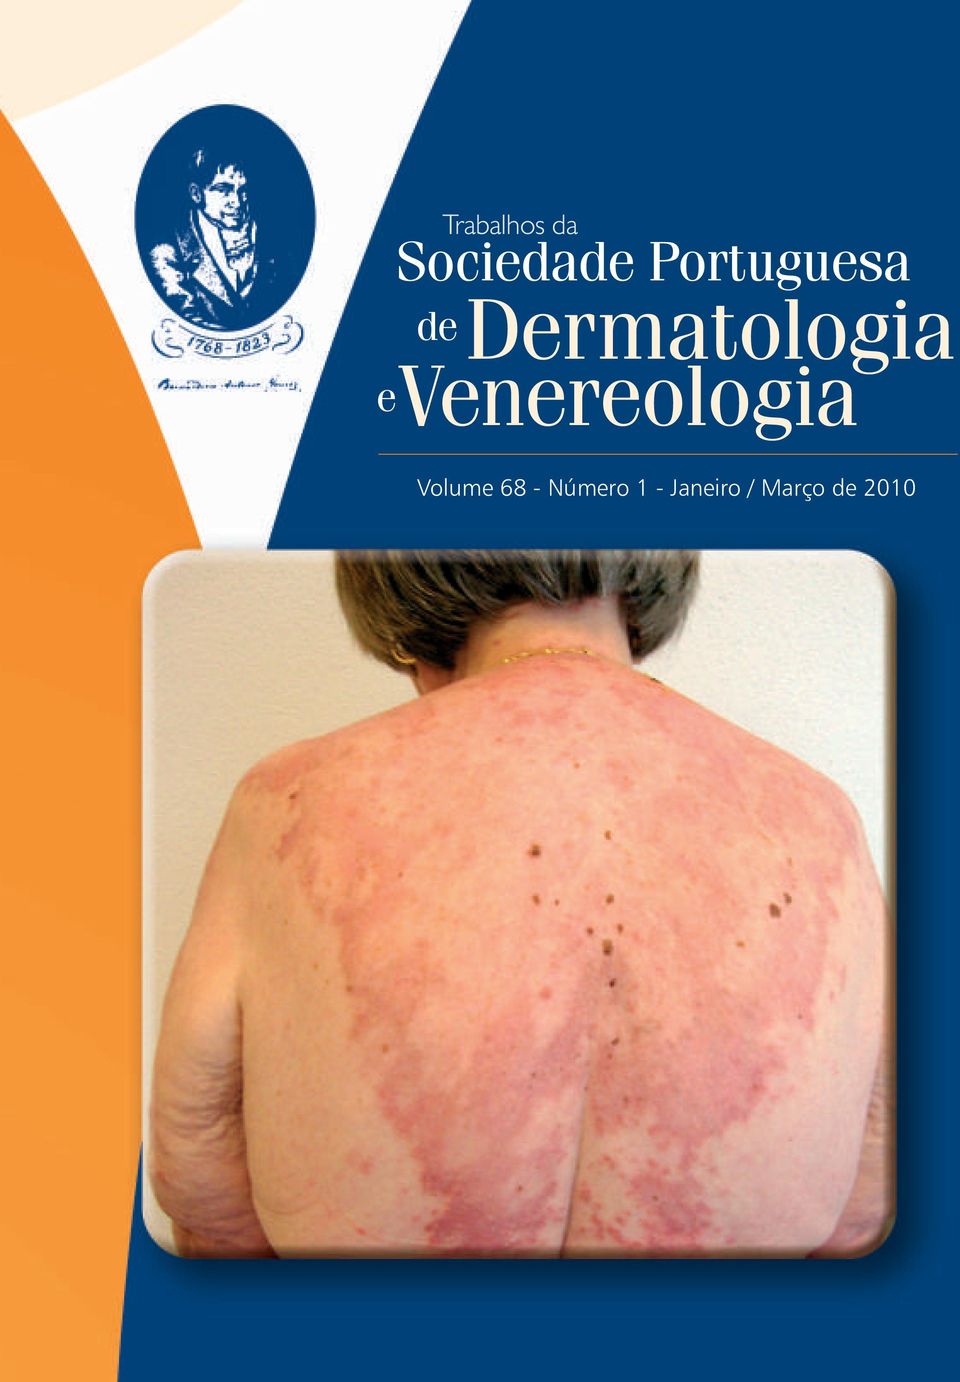 Venereologia Volume 68 -